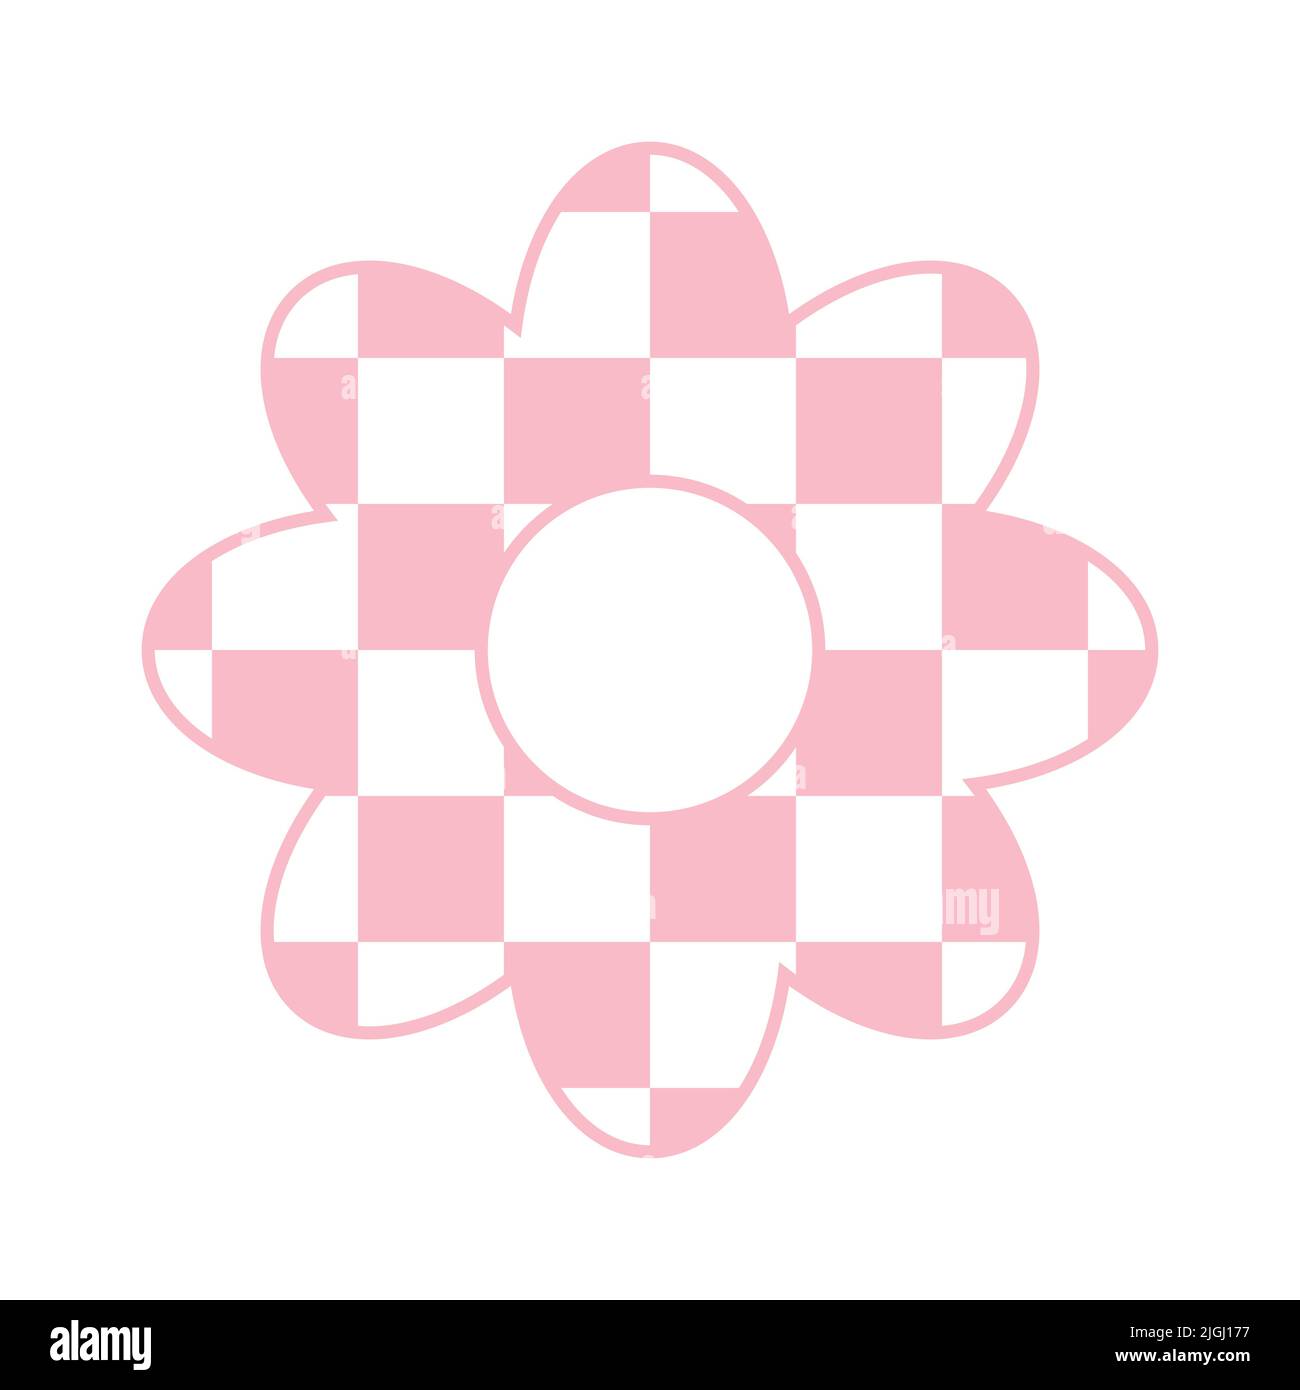 Fleur plate vectorielle avec texture rose de la planche d'échecs Illustration de Vecteur